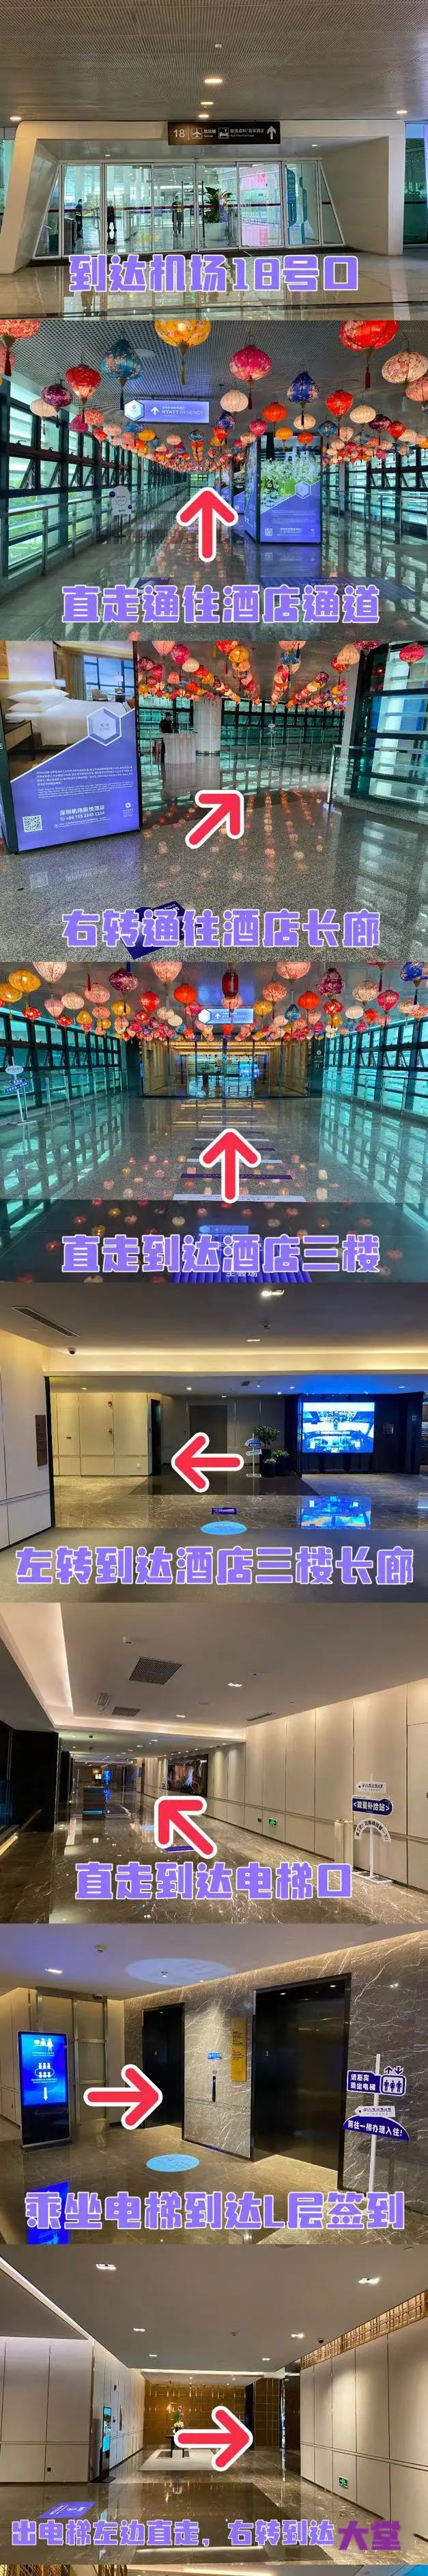 大模型时代的变与不变 深圳站最后1天！ 深圳机场凯悦酒店等你来！